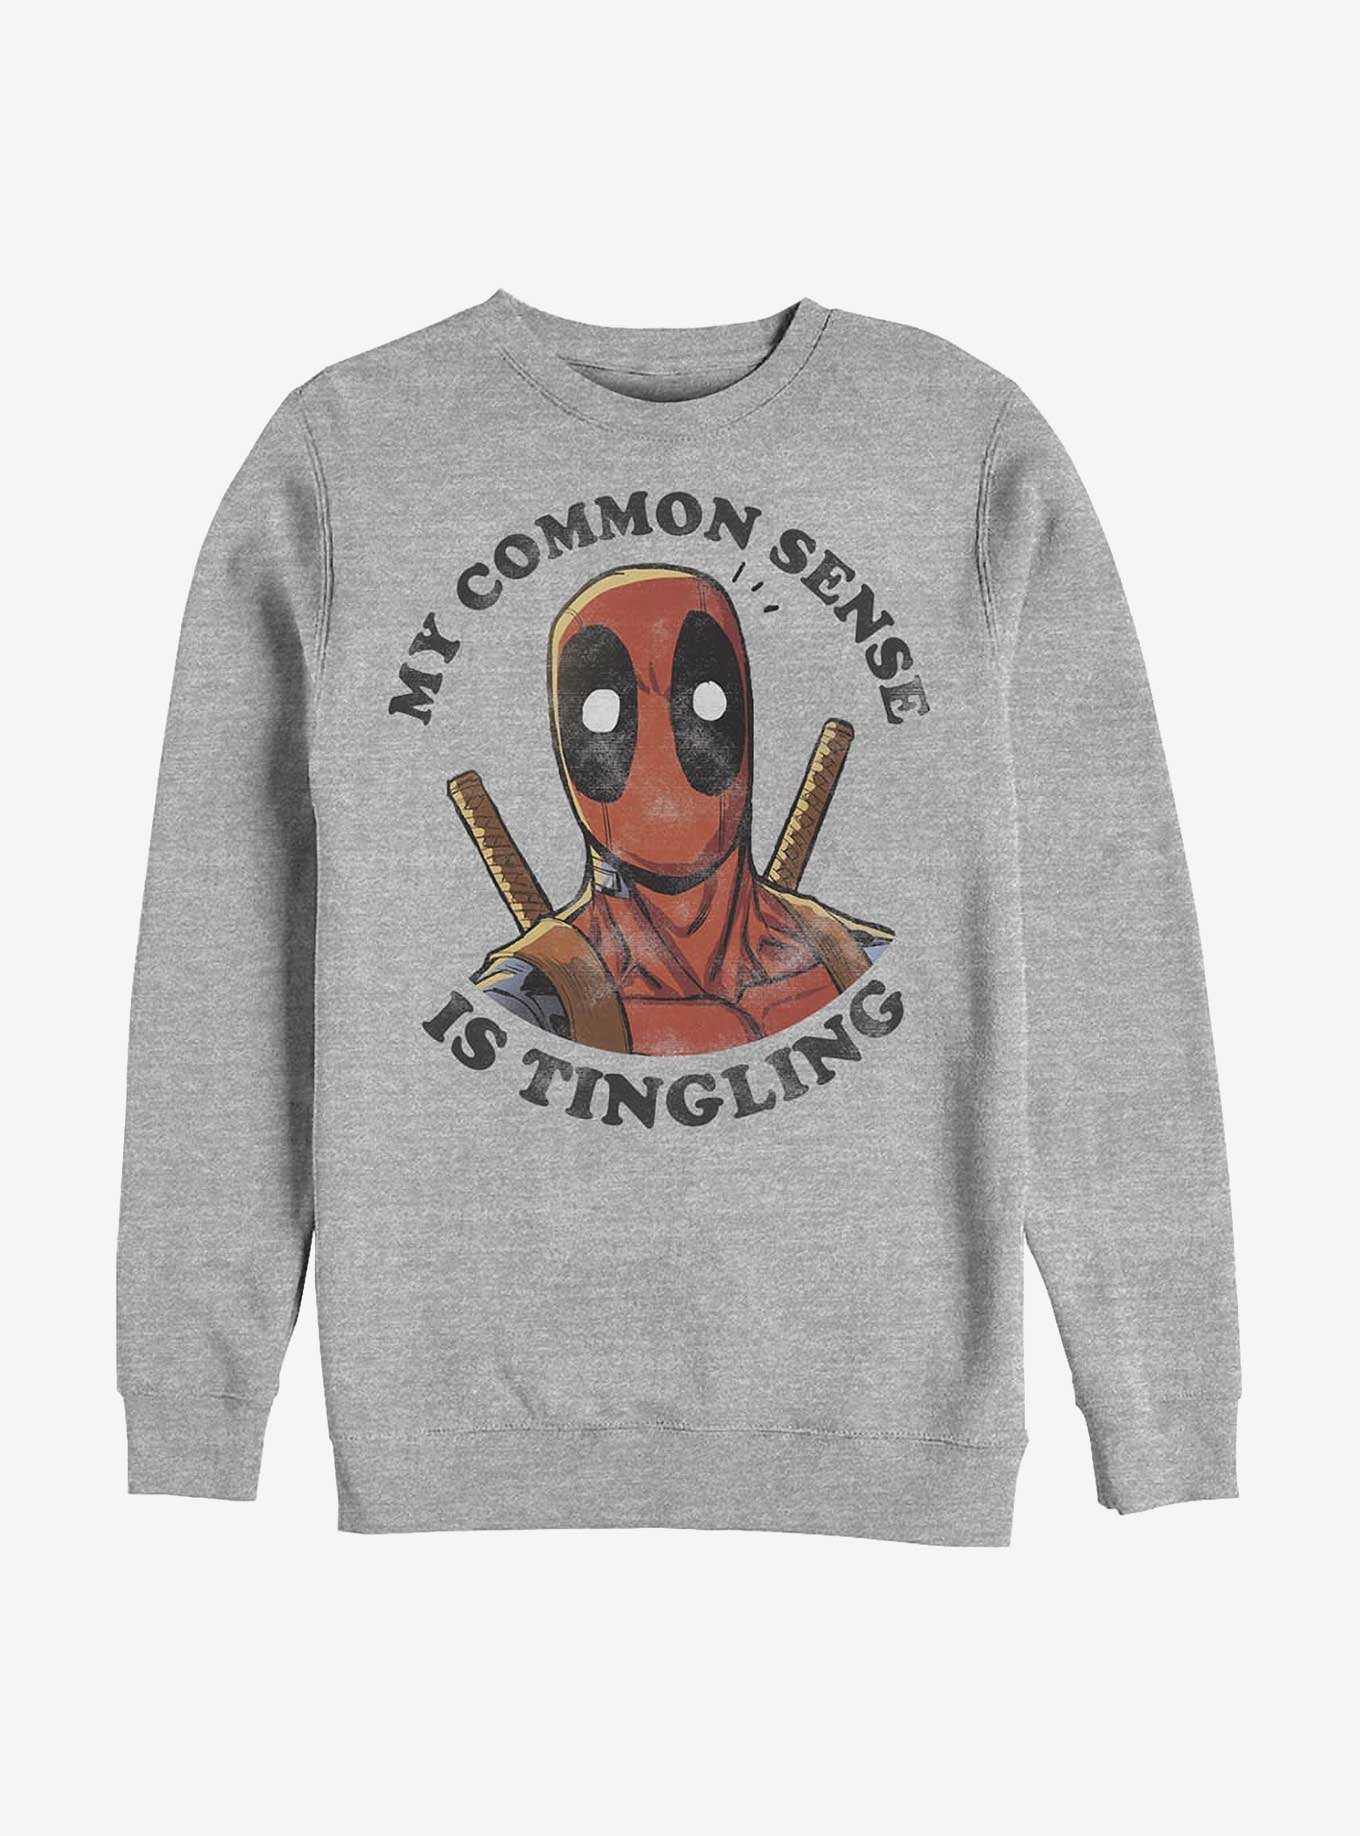 Marvel Deadpool Tingling Sweatshirt, , hi-res